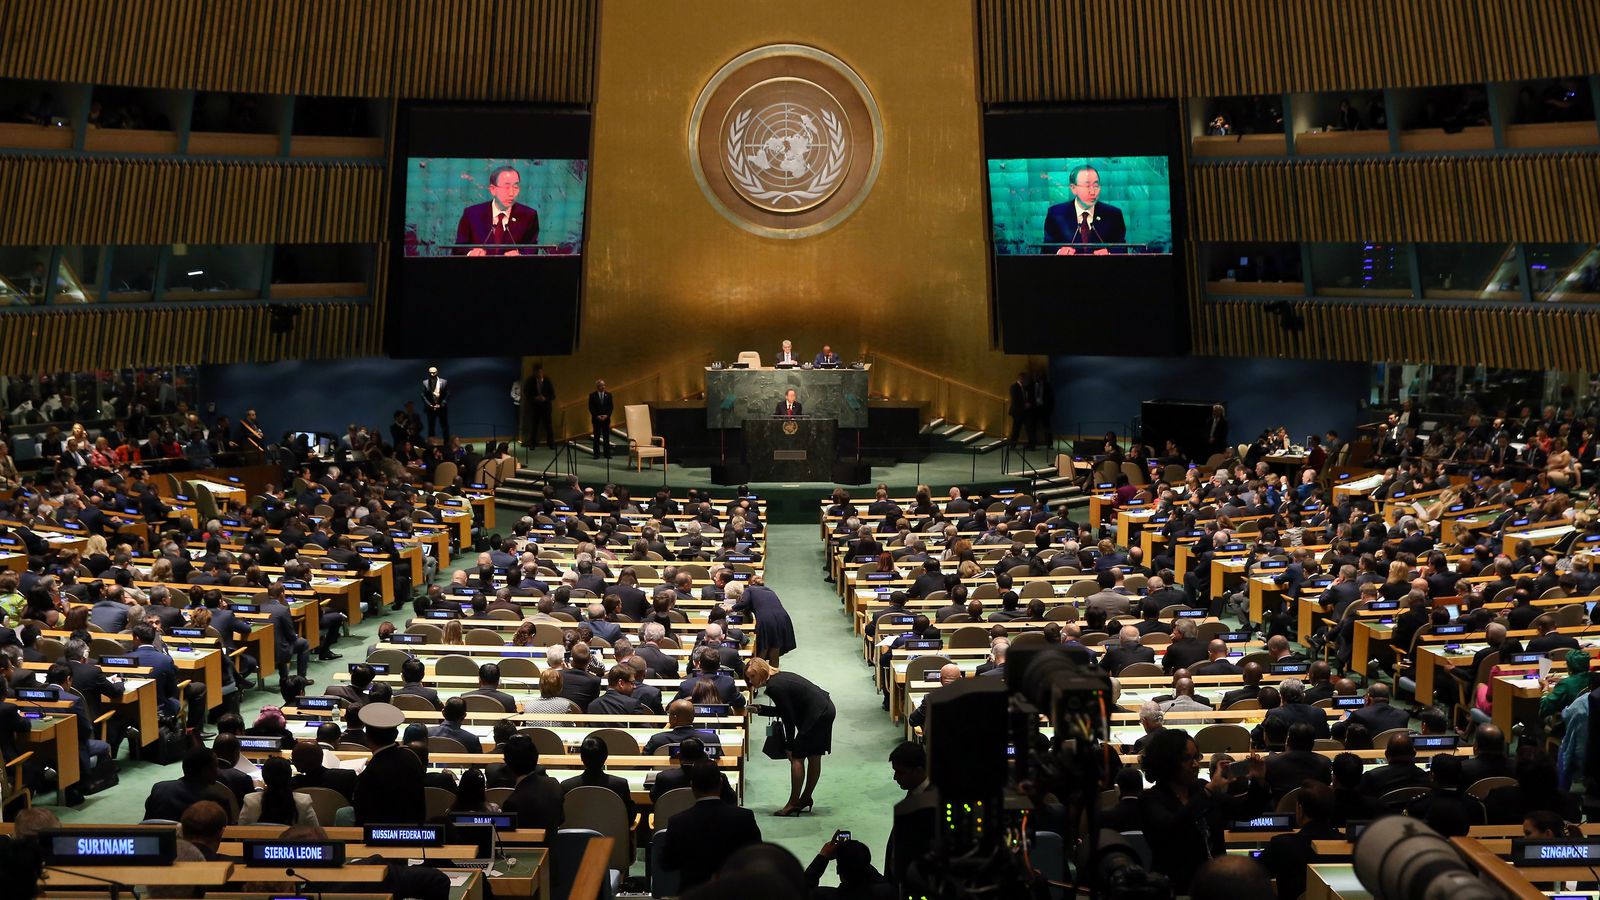 Оон сентябрь. Генеральная Ассамблея ООН 2005. Трибуна Генассамблеи ООН. Зал заседания Генассамблеи ООН трибуна.